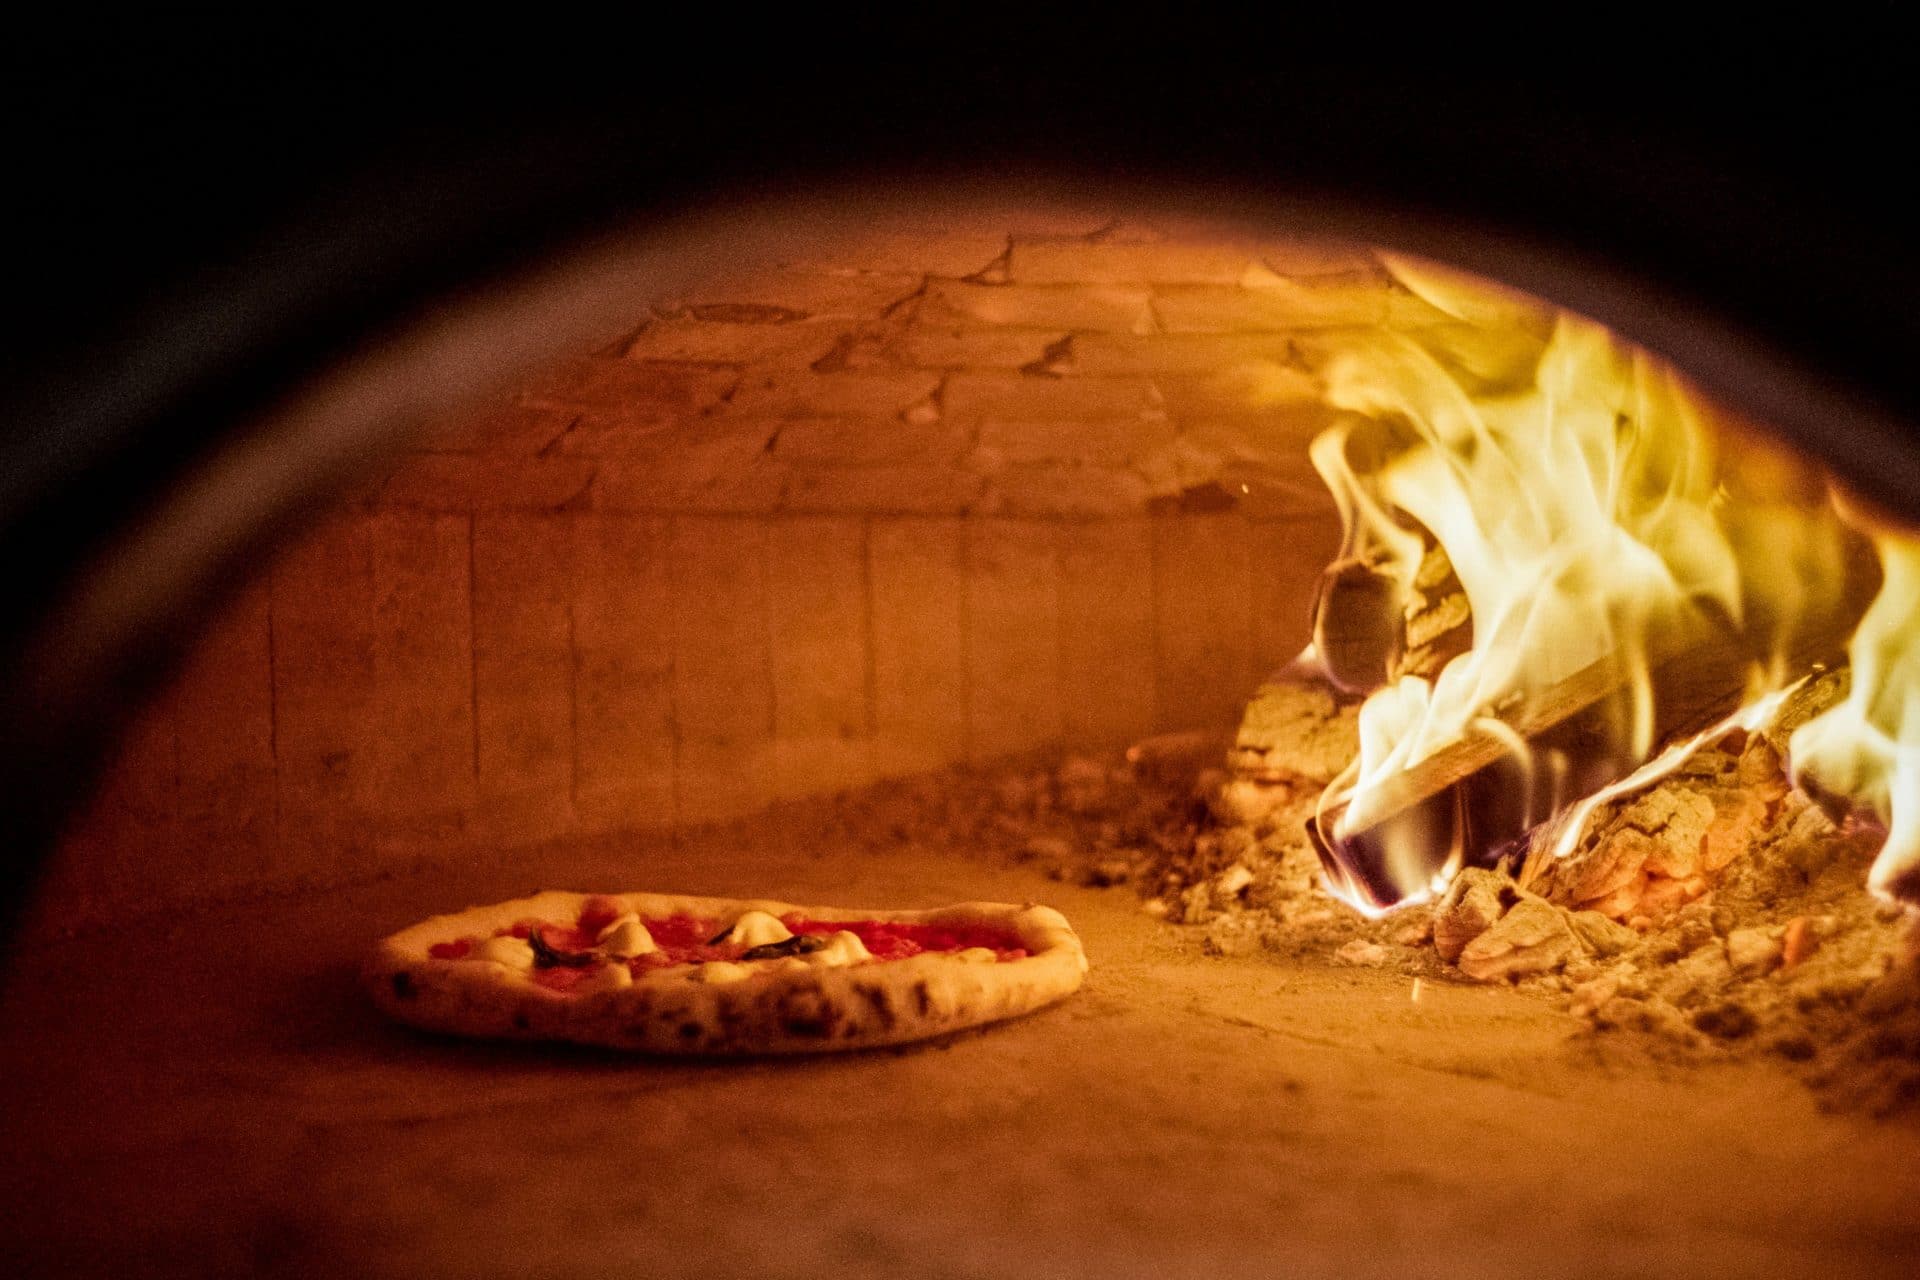 "Van helye a nápolyi pizzának Budapesten" - Dining Guide